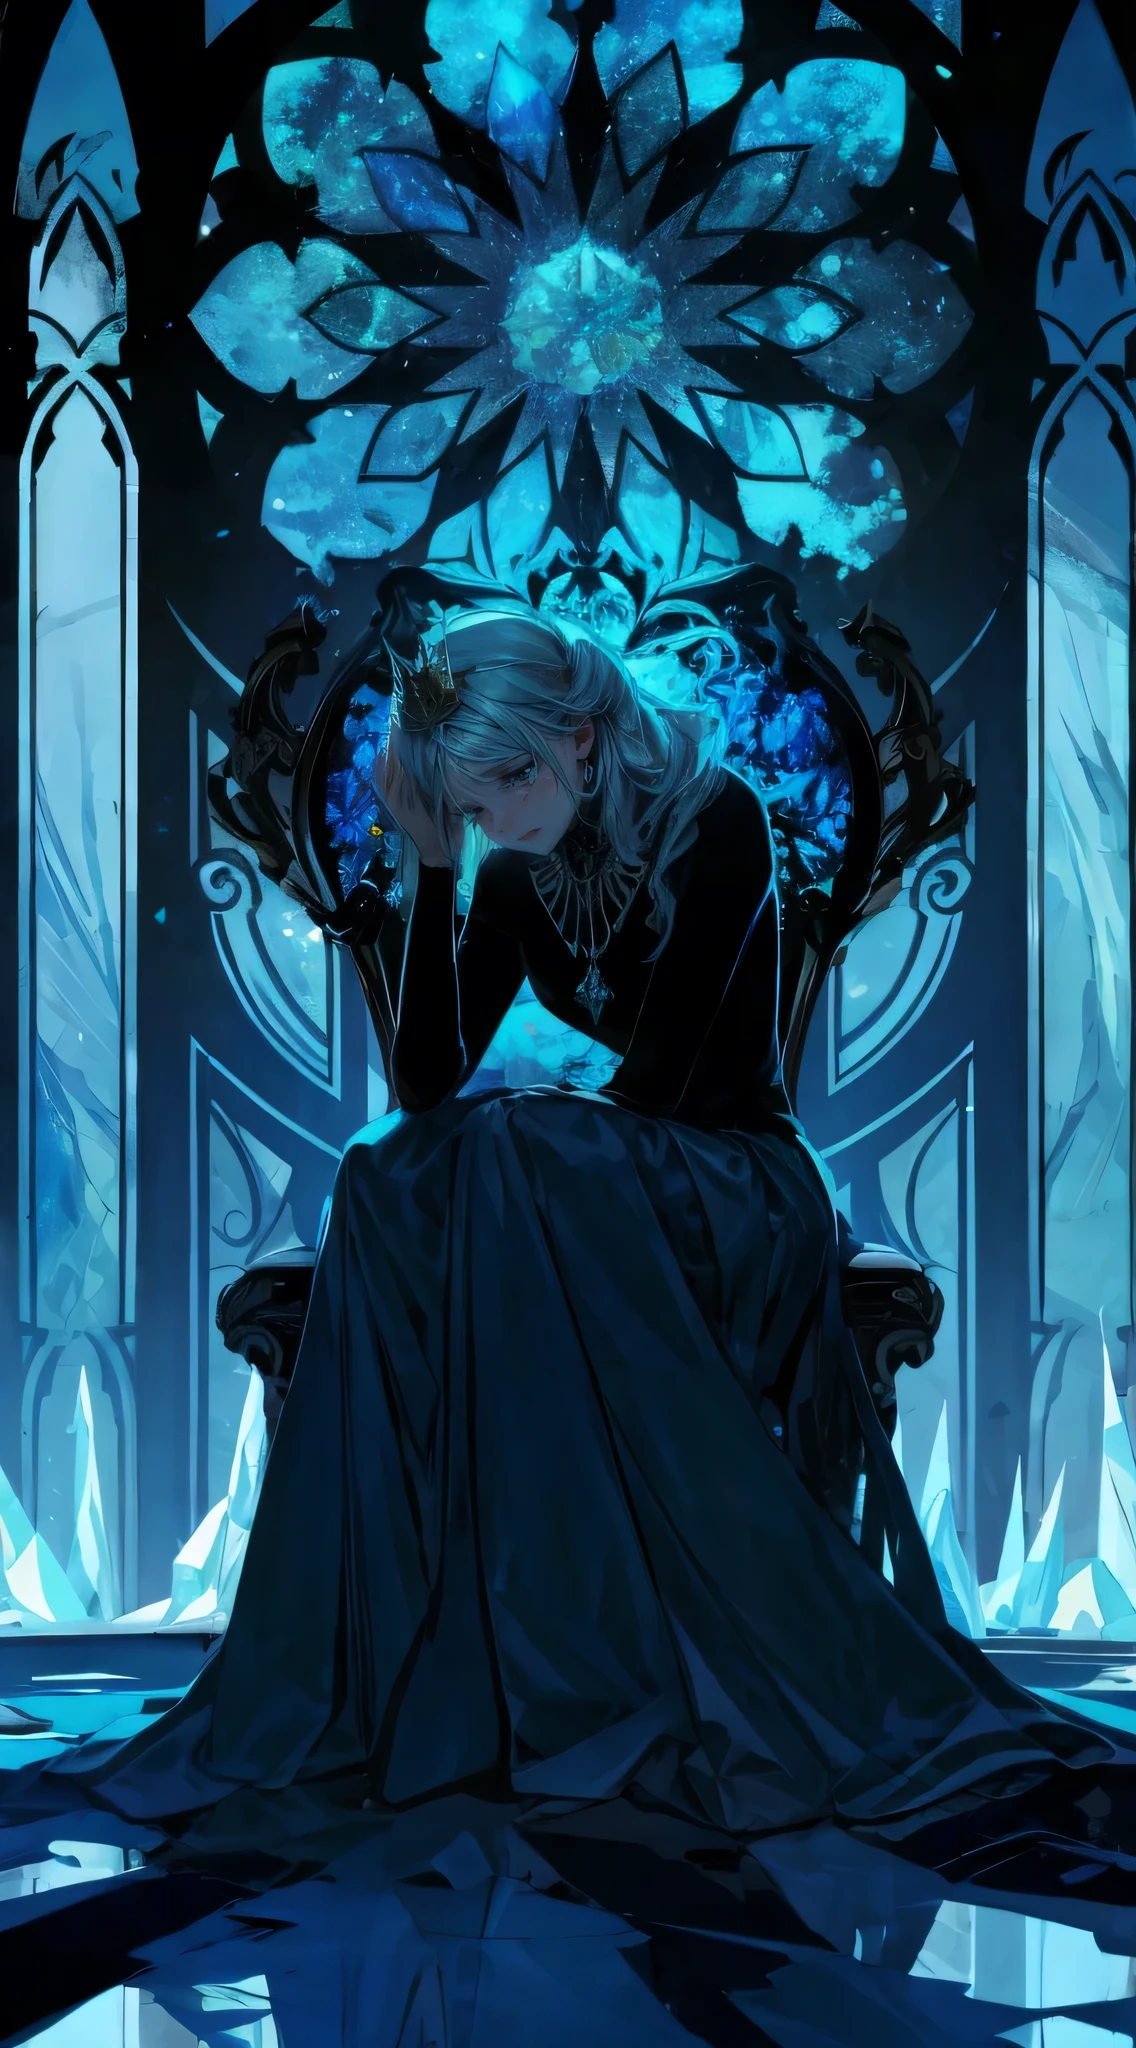 das böse Eis sitzt auf ihrem Thron, sie hat eine kleine Krone, Tyndall-Effekt von der Glasmalerei hinter ihr, leistungsstark, TRAURIGKEIT, verzweifeln, perfekte Illustration, Anime-Realismus